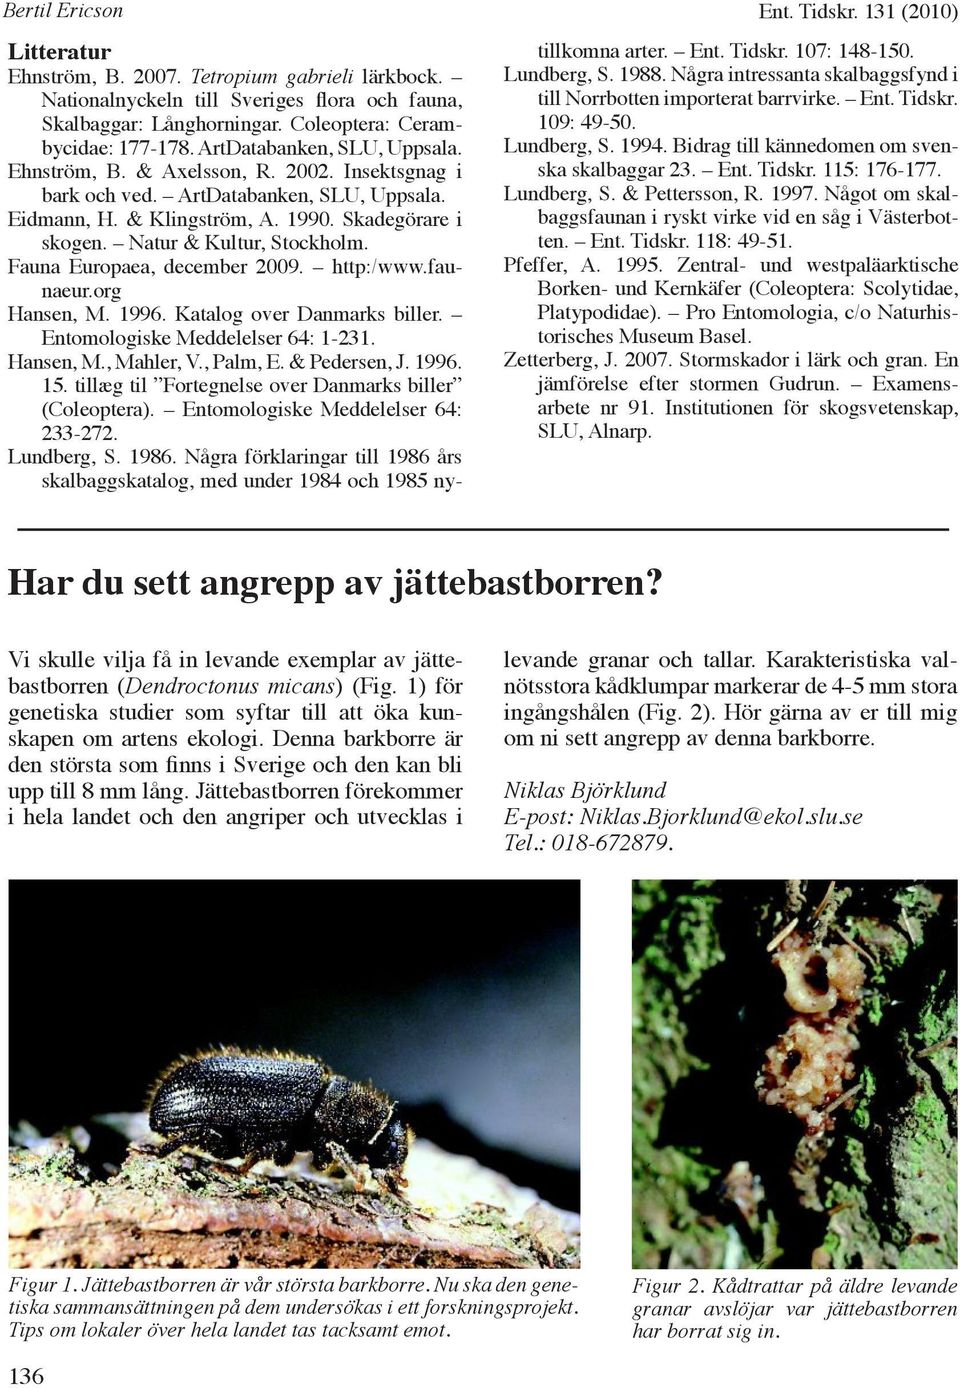 Skadegörare i skogen. Natur & Kultur, Stockholm. Fauna Europaea, december 2009. http:/www.faunaeur.org Hansen, M. 1996. Katalog over Danmarks biller. Entomologiske Meddelelser 64: 1-231. Hansen, M., Mahler, V.